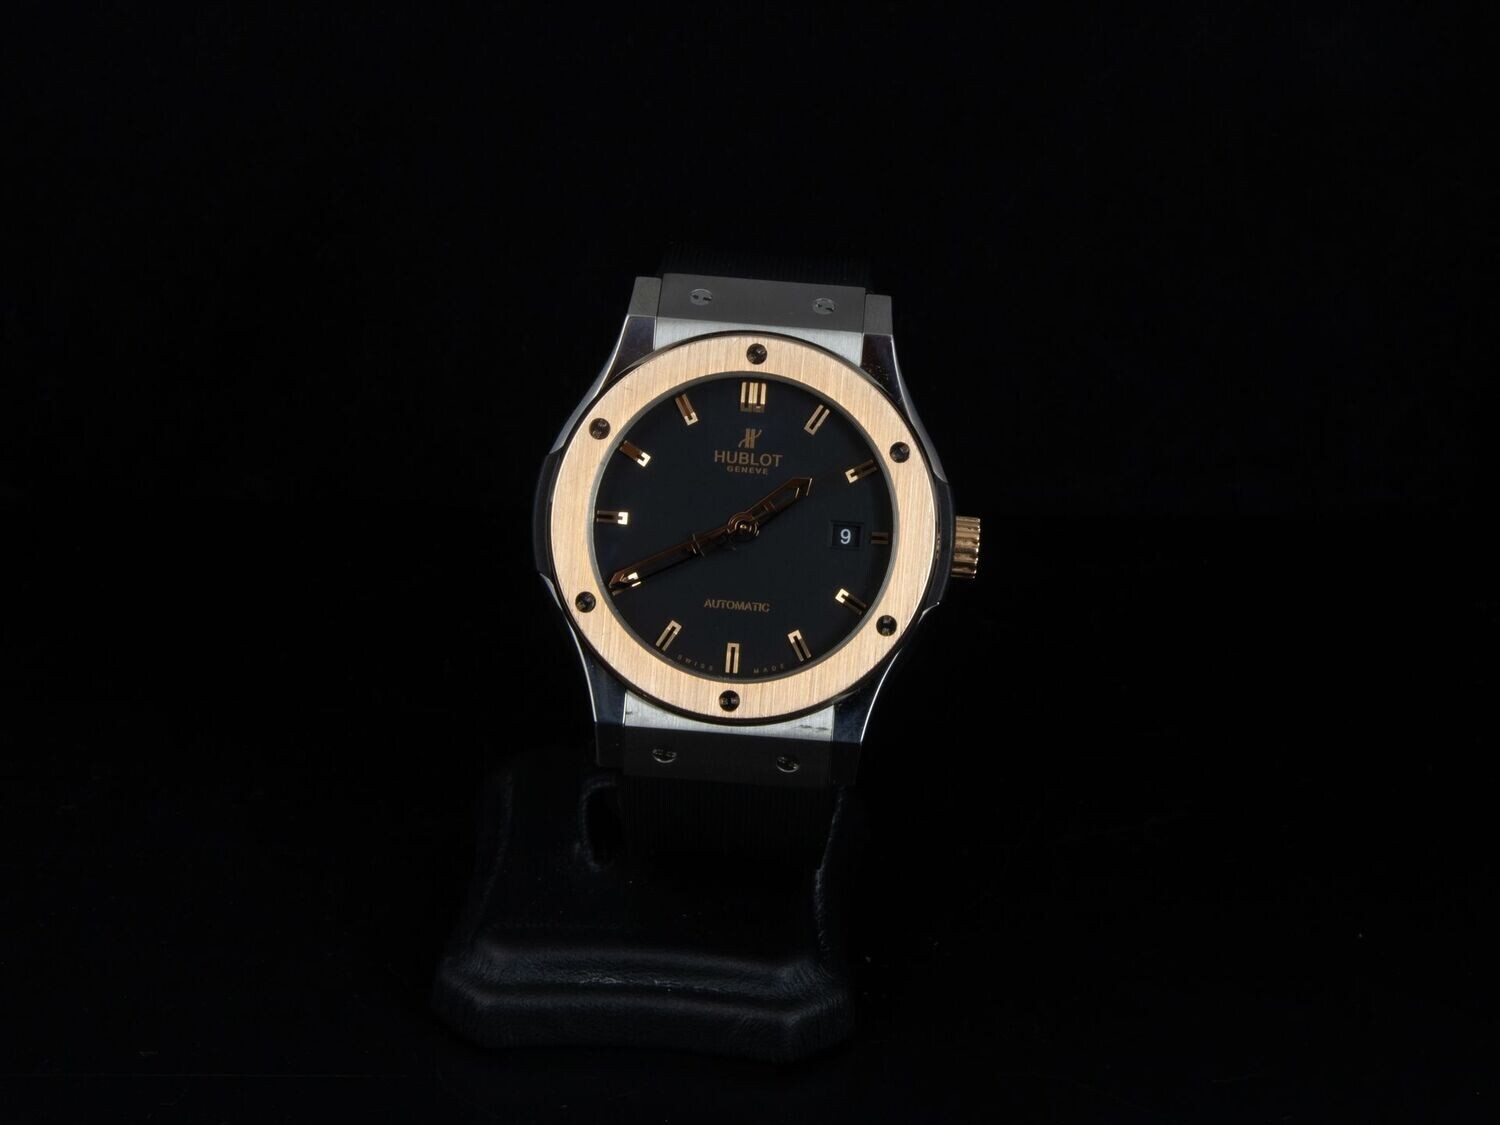 Reloj Hublot Classic Fusion de 42 mm. en titanio. Caja y documentación.